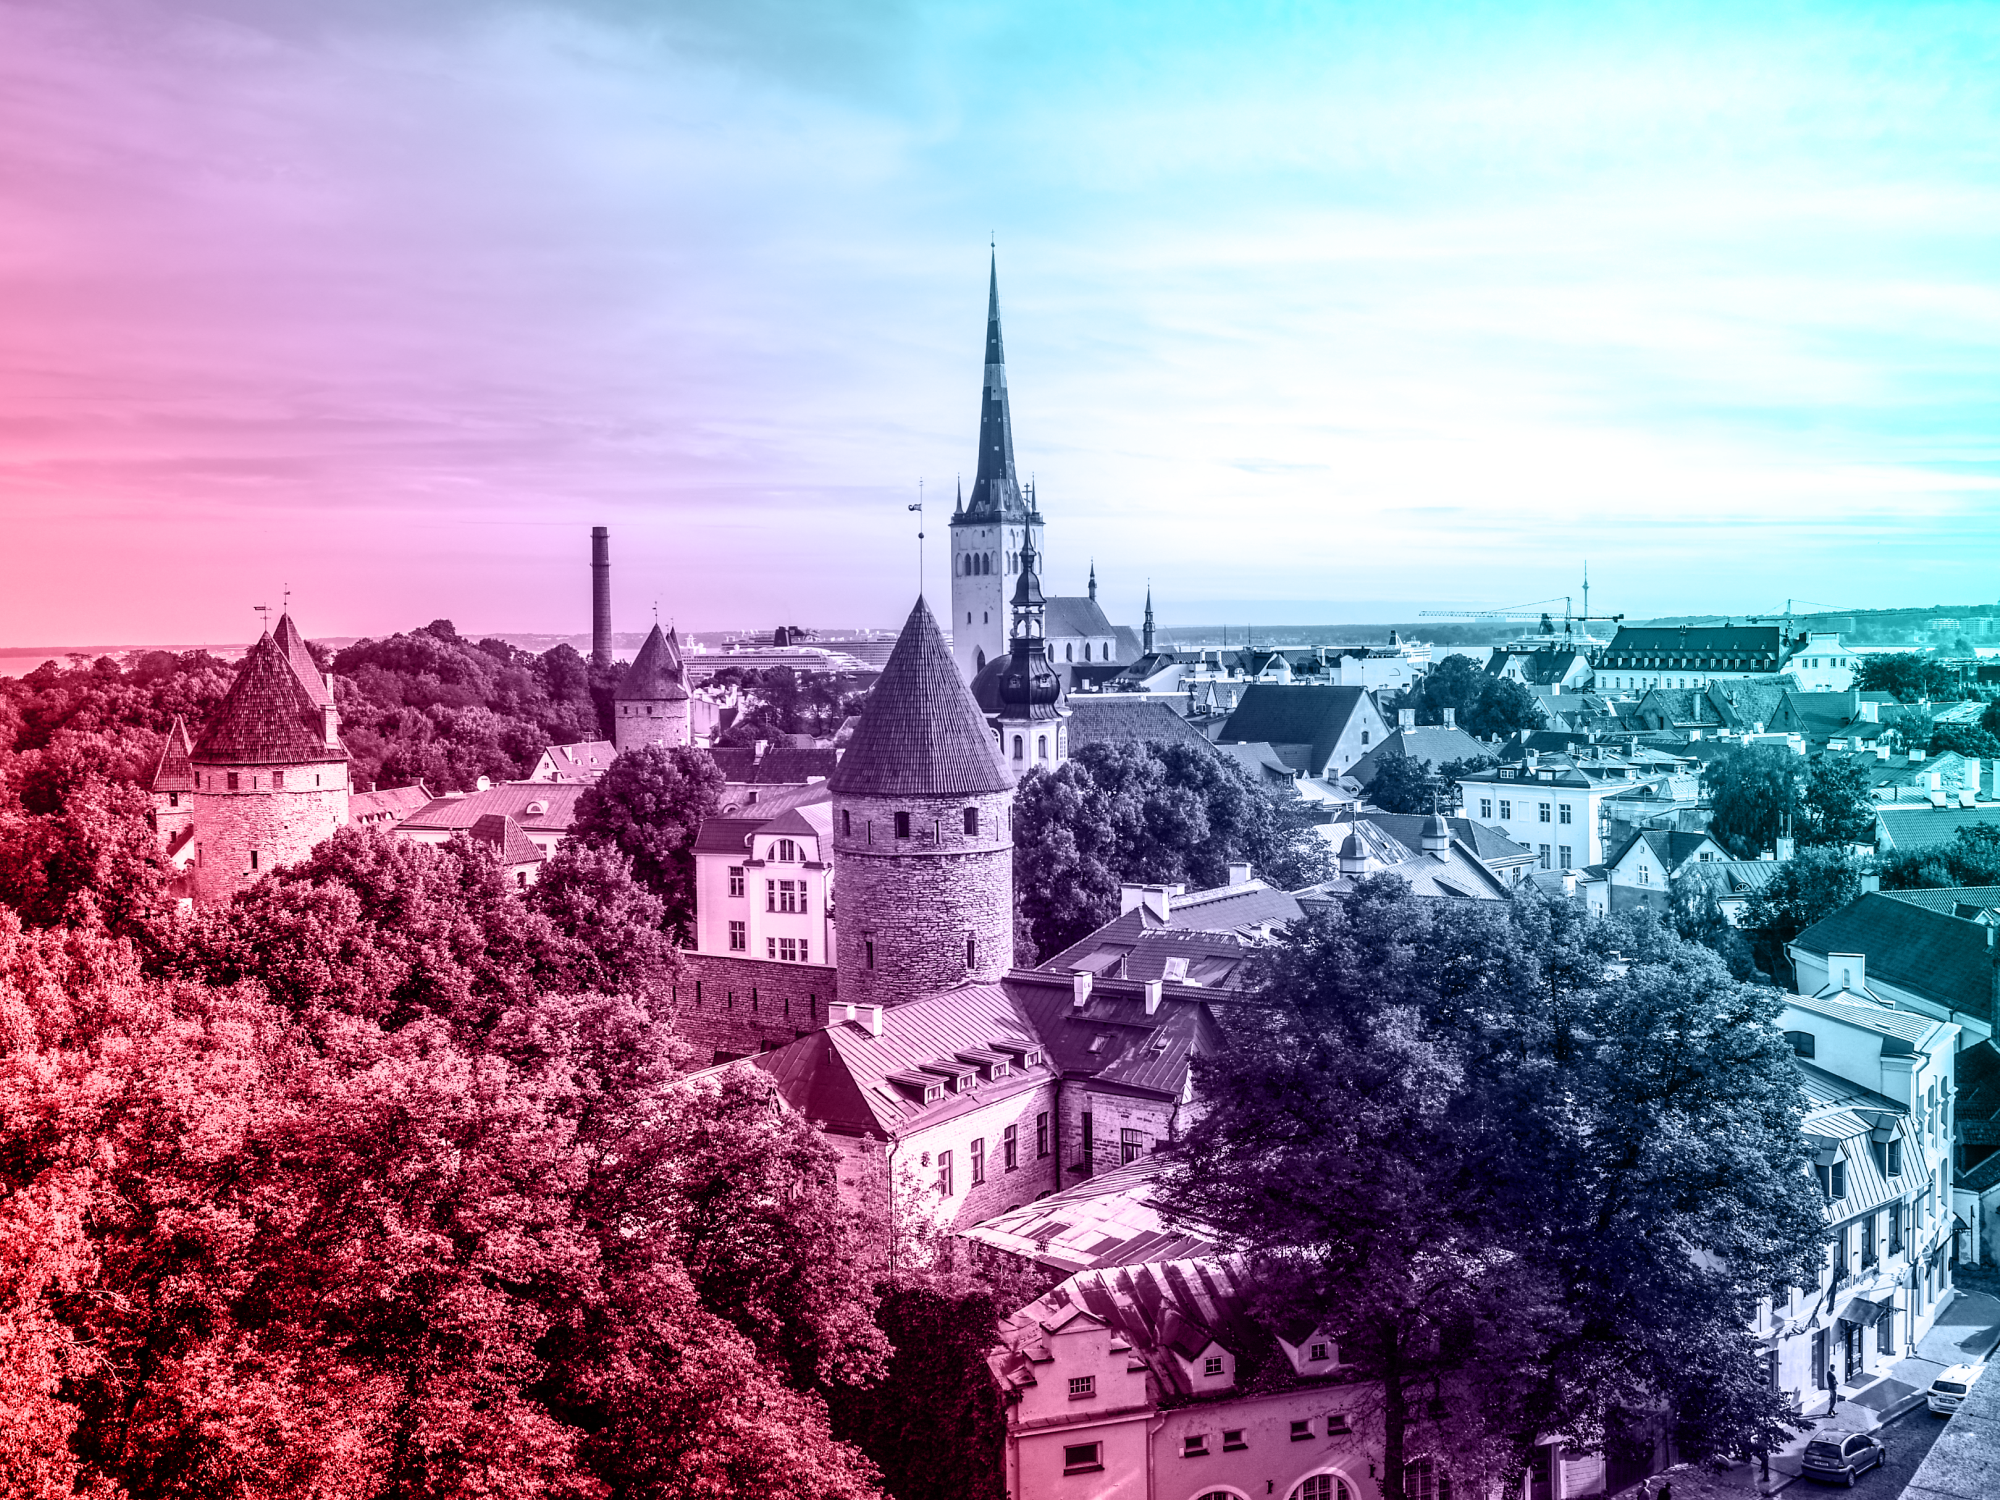 Tallinn is definitely worth a trip